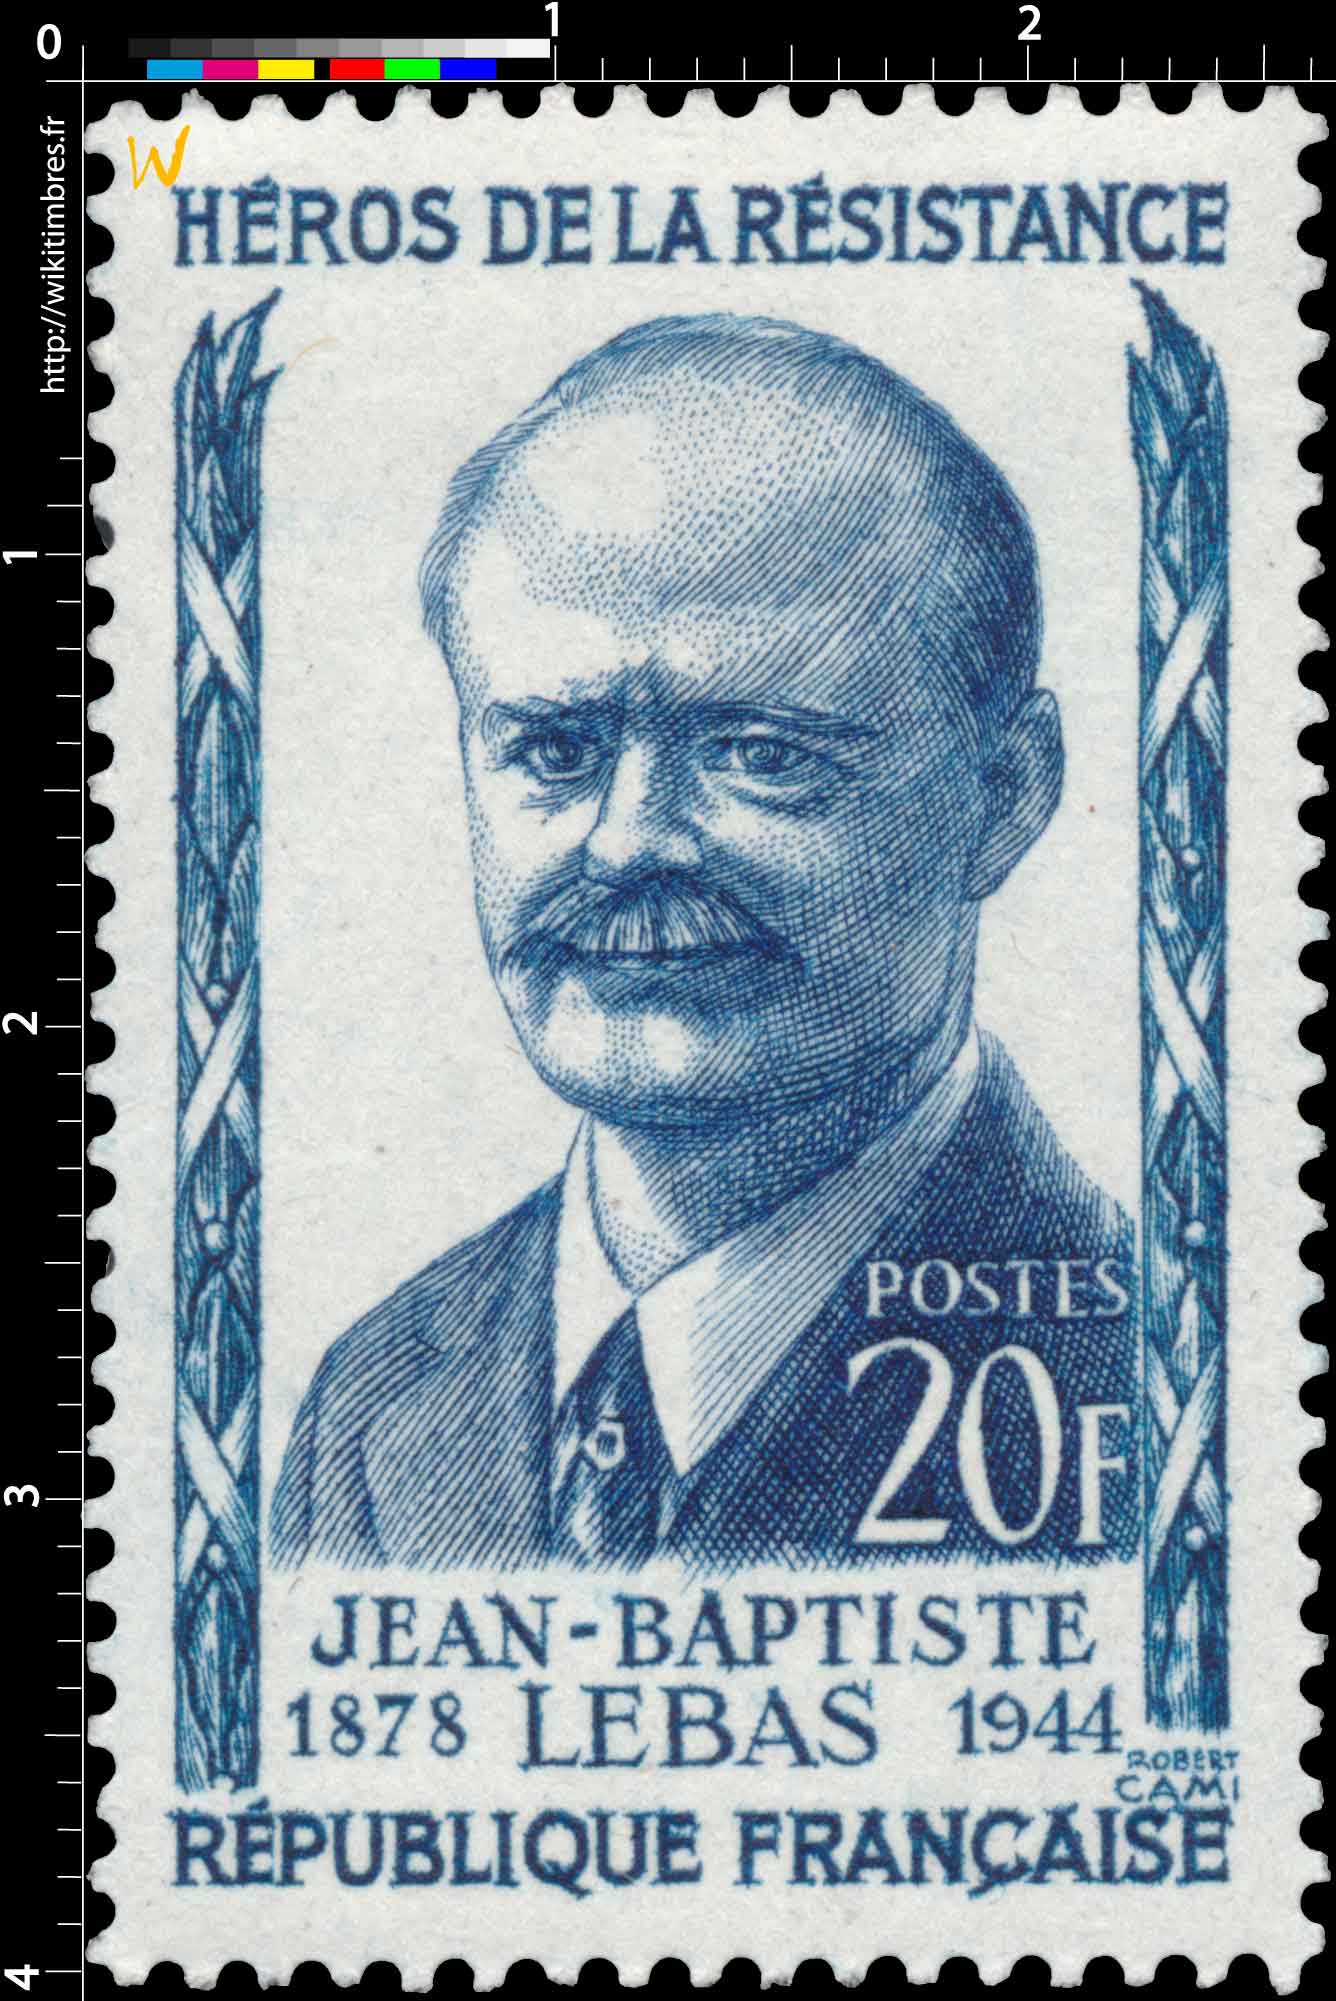 HÉROS DE LA RÉSISTANCE JEAN-BAPTISTE LEBAS 1878-1944